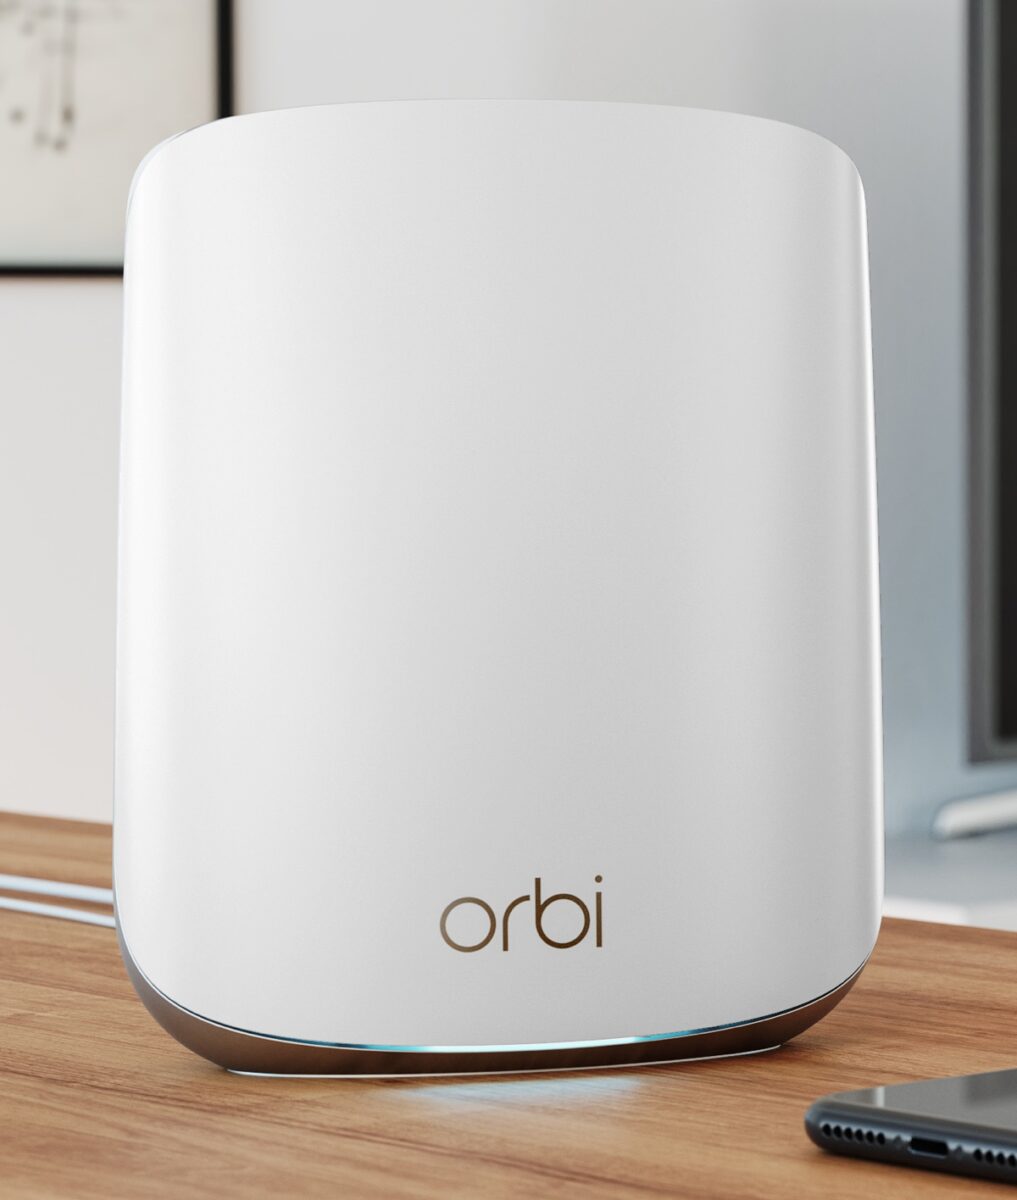 Netgear Orbi RBK353 porta il Wi-Fi 6 mesh in casa e piccole aziende